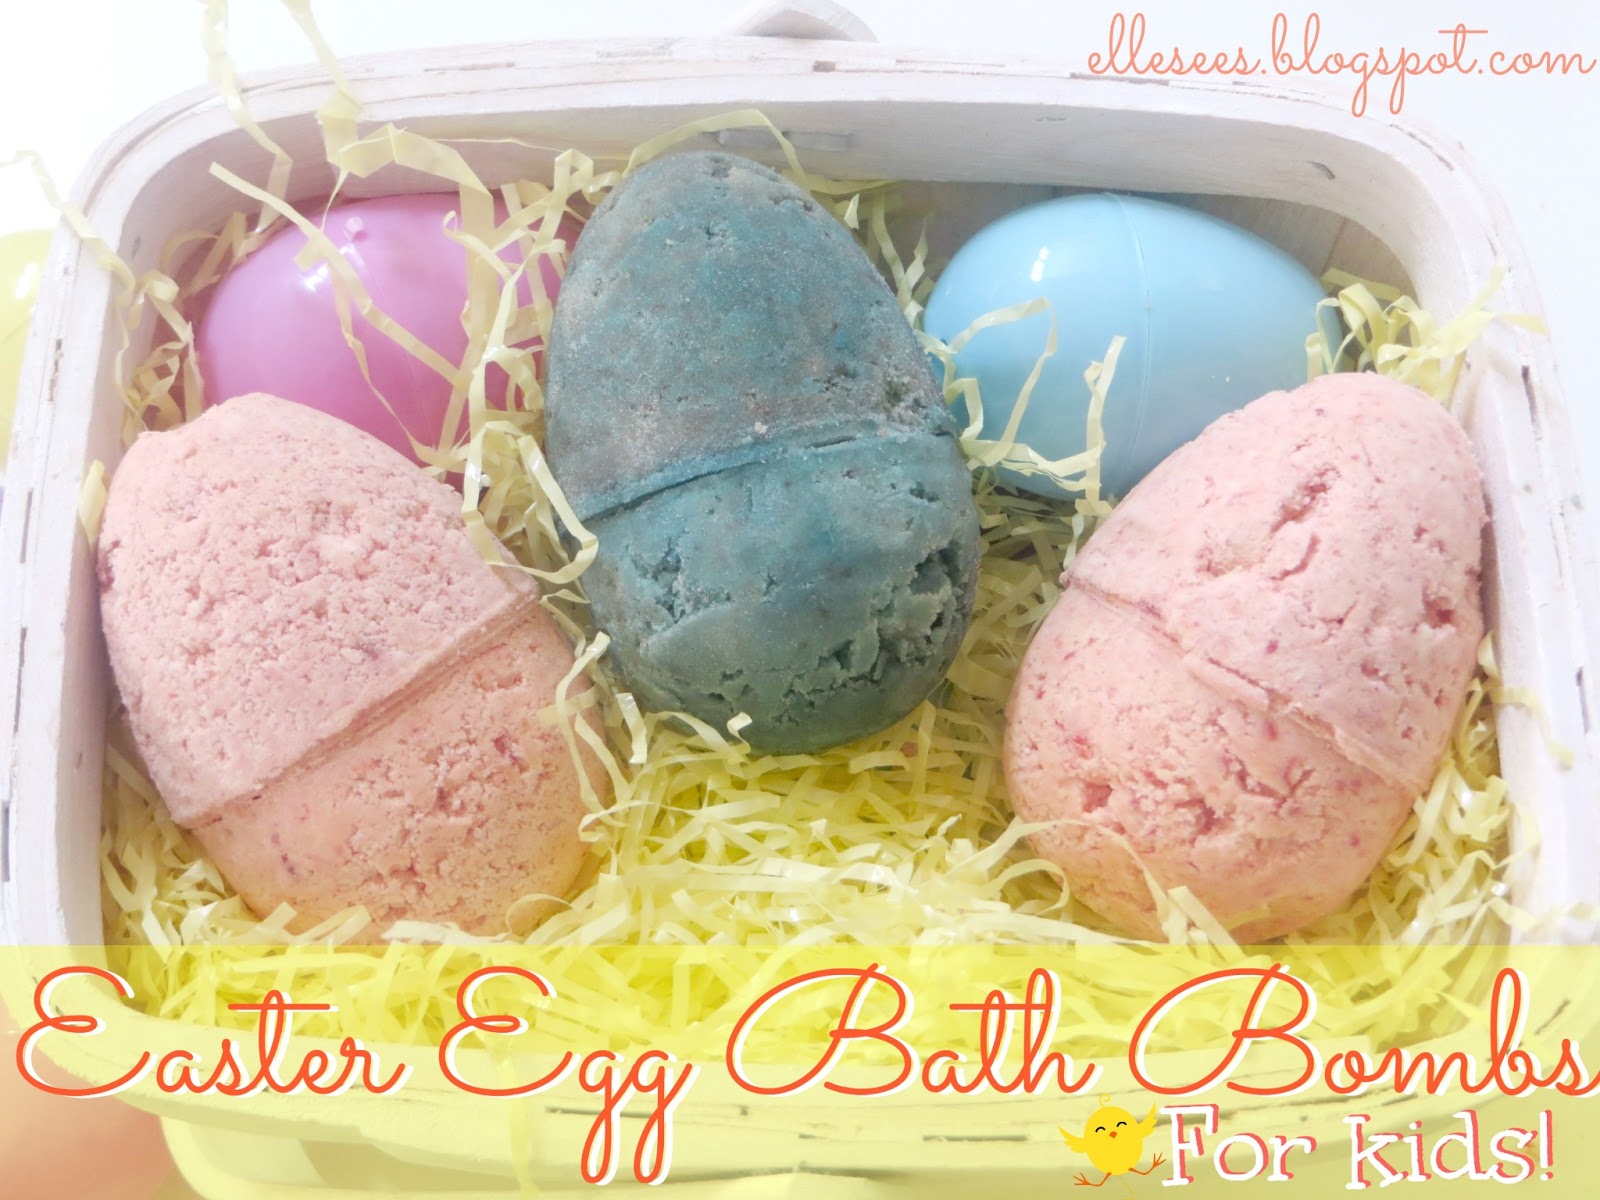 http://4.bp.blogspot.com/-Kl-LlvIVtRU/UUyLHgSYlqI/AAAAAAAAHig/qdsNvsVgno0/s1600/easter+egg+bath+bombs+for+kids.jpg